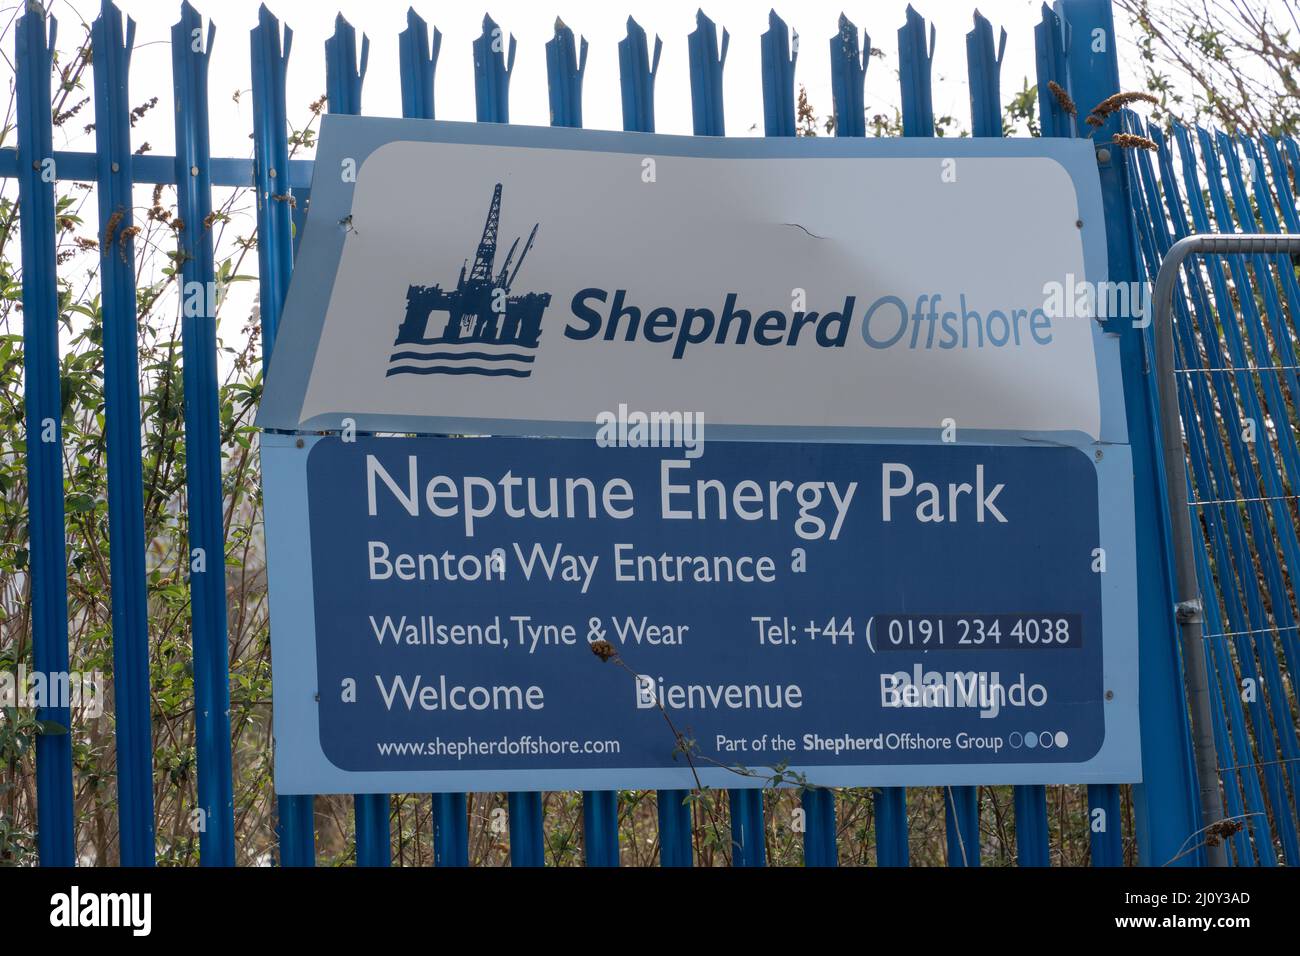 Shepherd Offshore, Wallsend, Großbritannien, arbeitet in der Öl- und Erdgasindustrie, zu einer Zeit, in der die Regierung versucht, die Energieversorgung des Vereinigten Königreichs zu sichern. Stockfoto